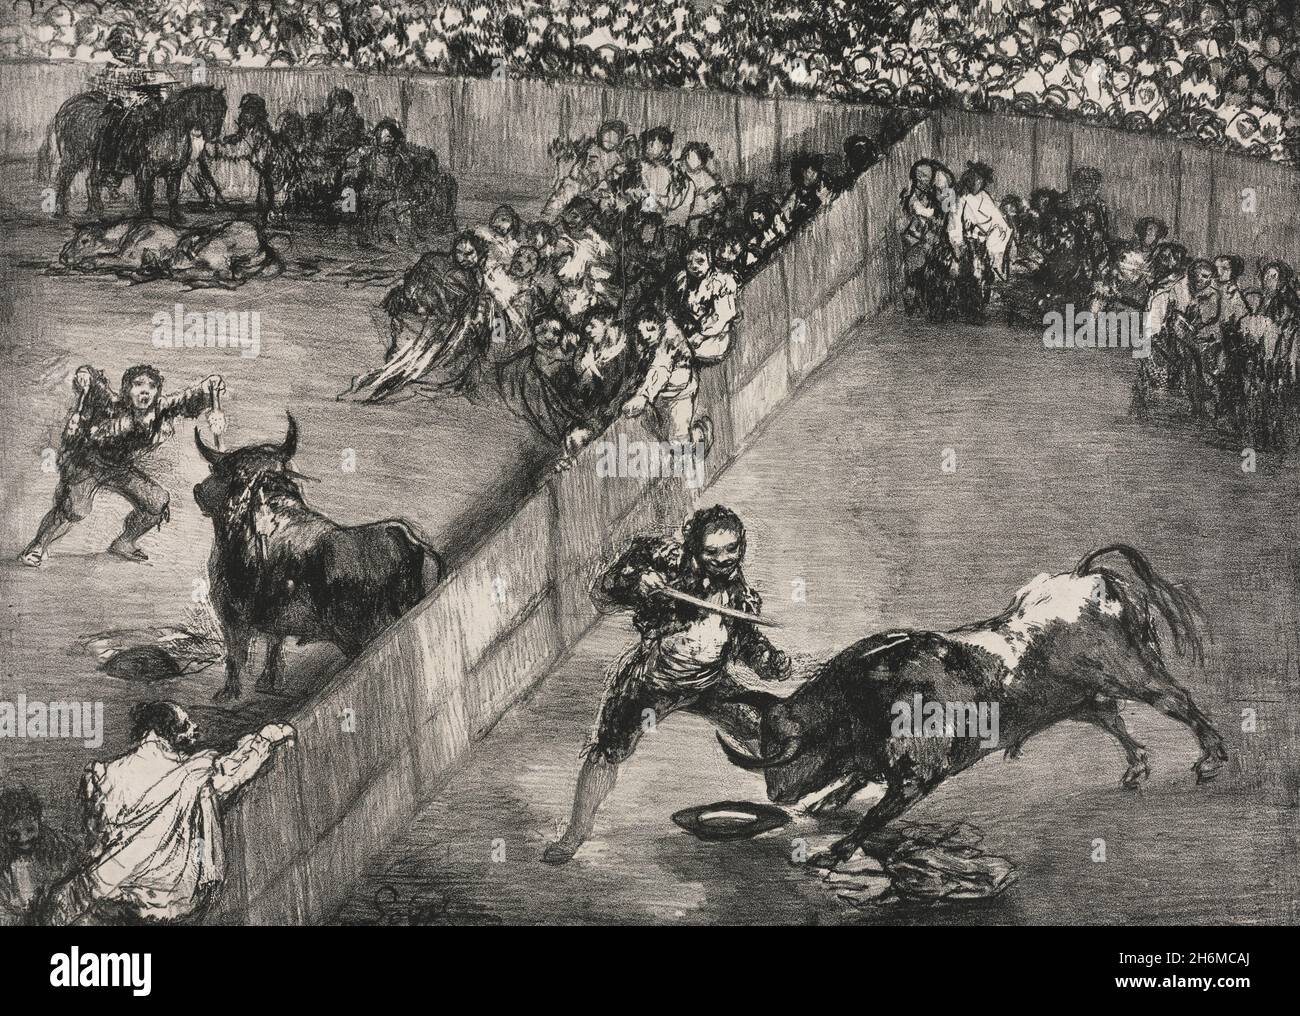 Las Bulls de Burdeos: Corrida de toros en un anillo dividido - Francisco de Goya, 1825 Foto de stock